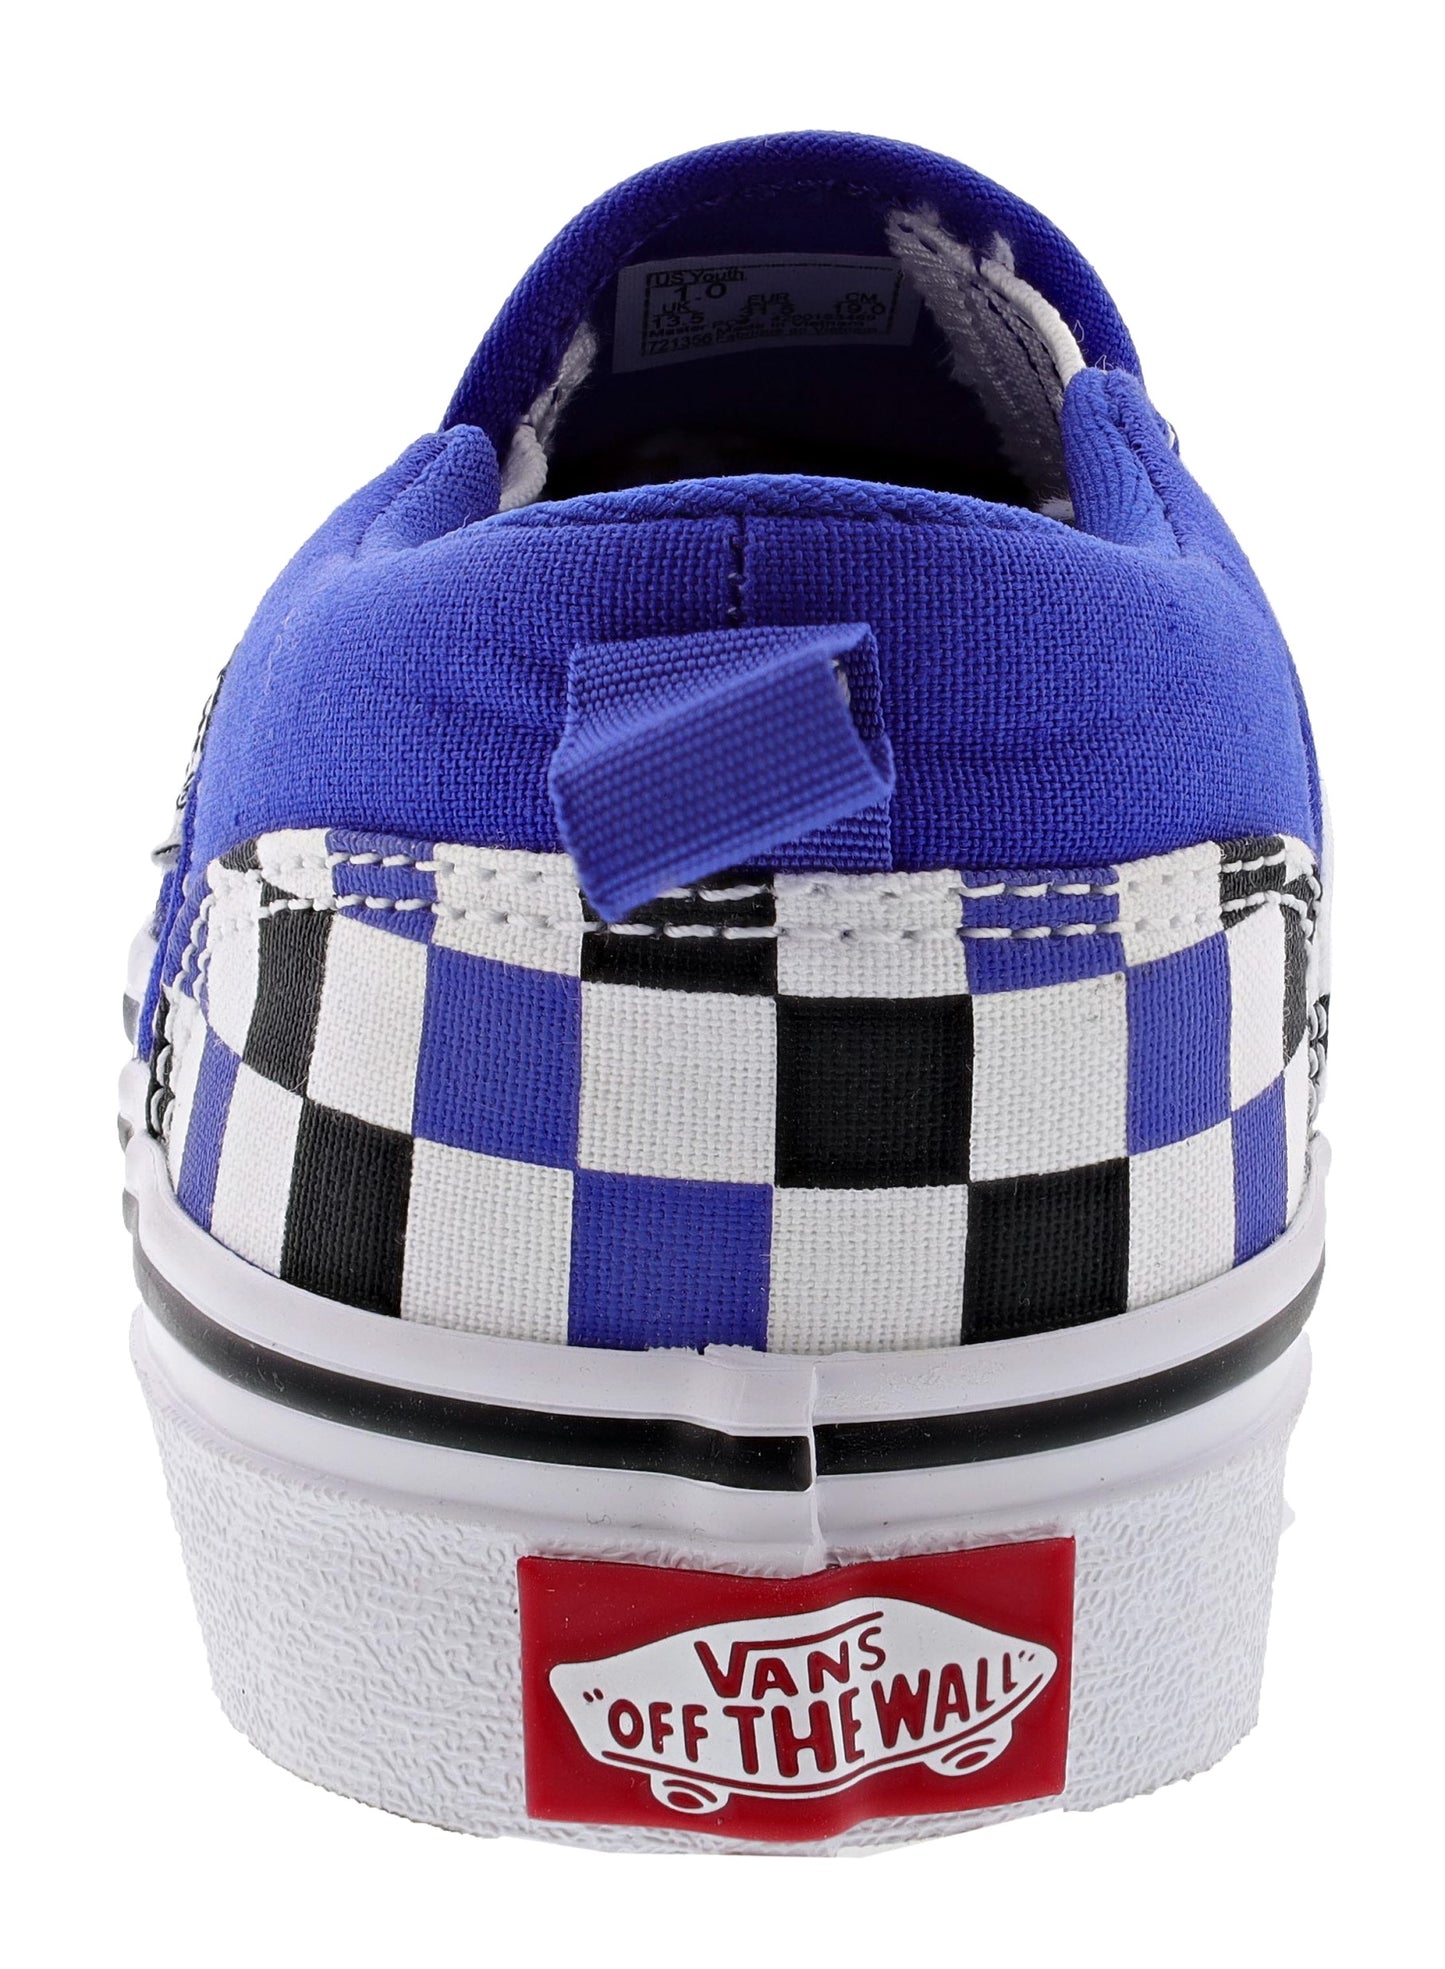 
                  
                    Vans Kid's Asher Slip On Sneakers
                  
                